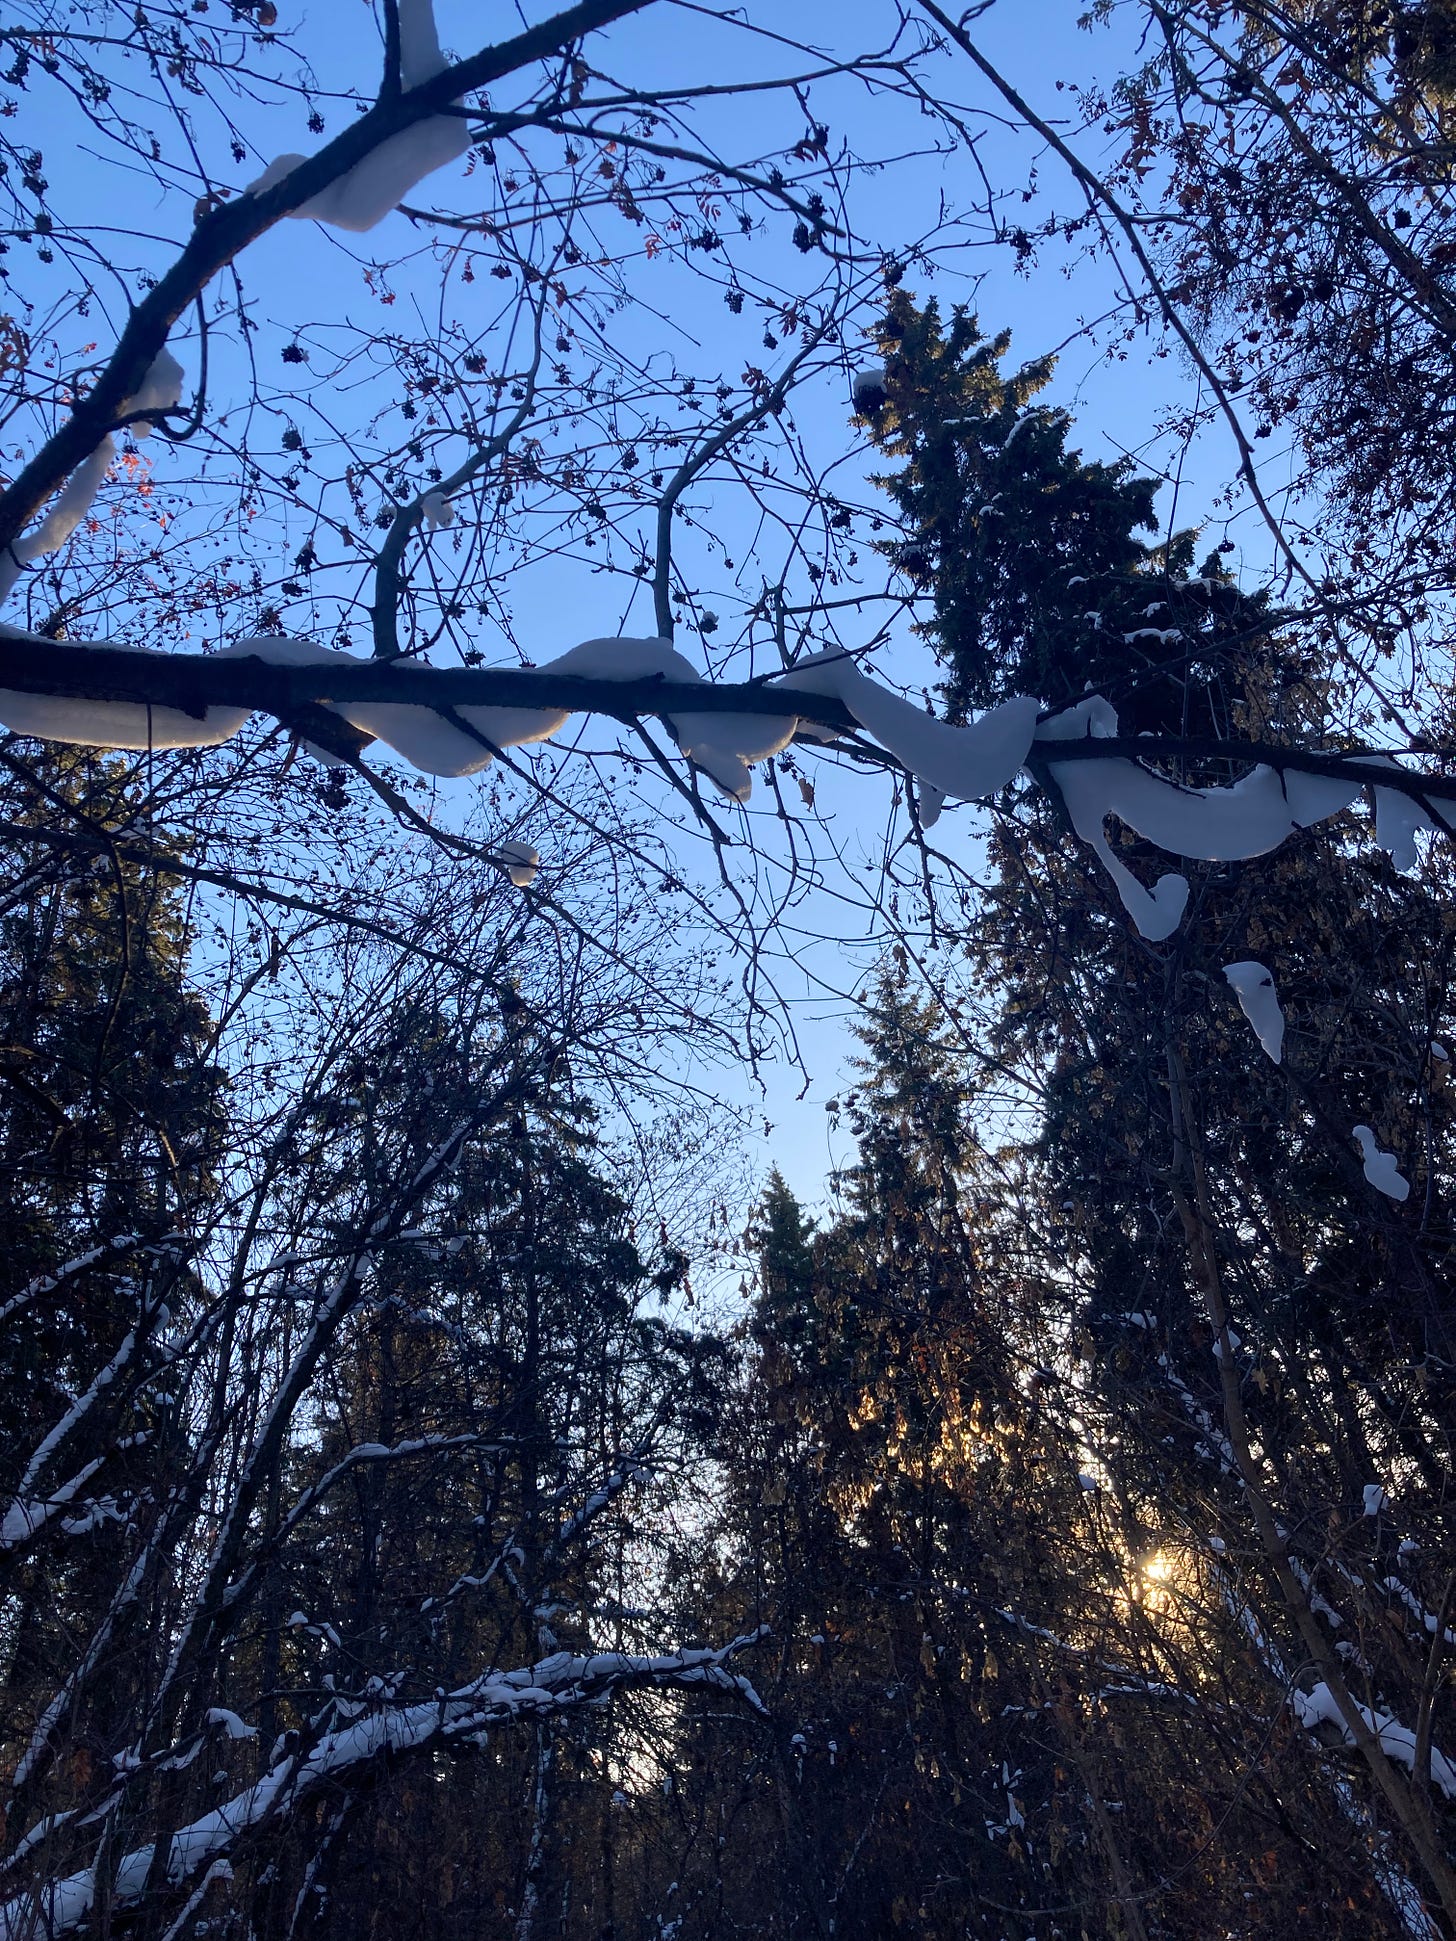 雪の森から見上げた空の写真。枝にリボンのように雪がかかっている。